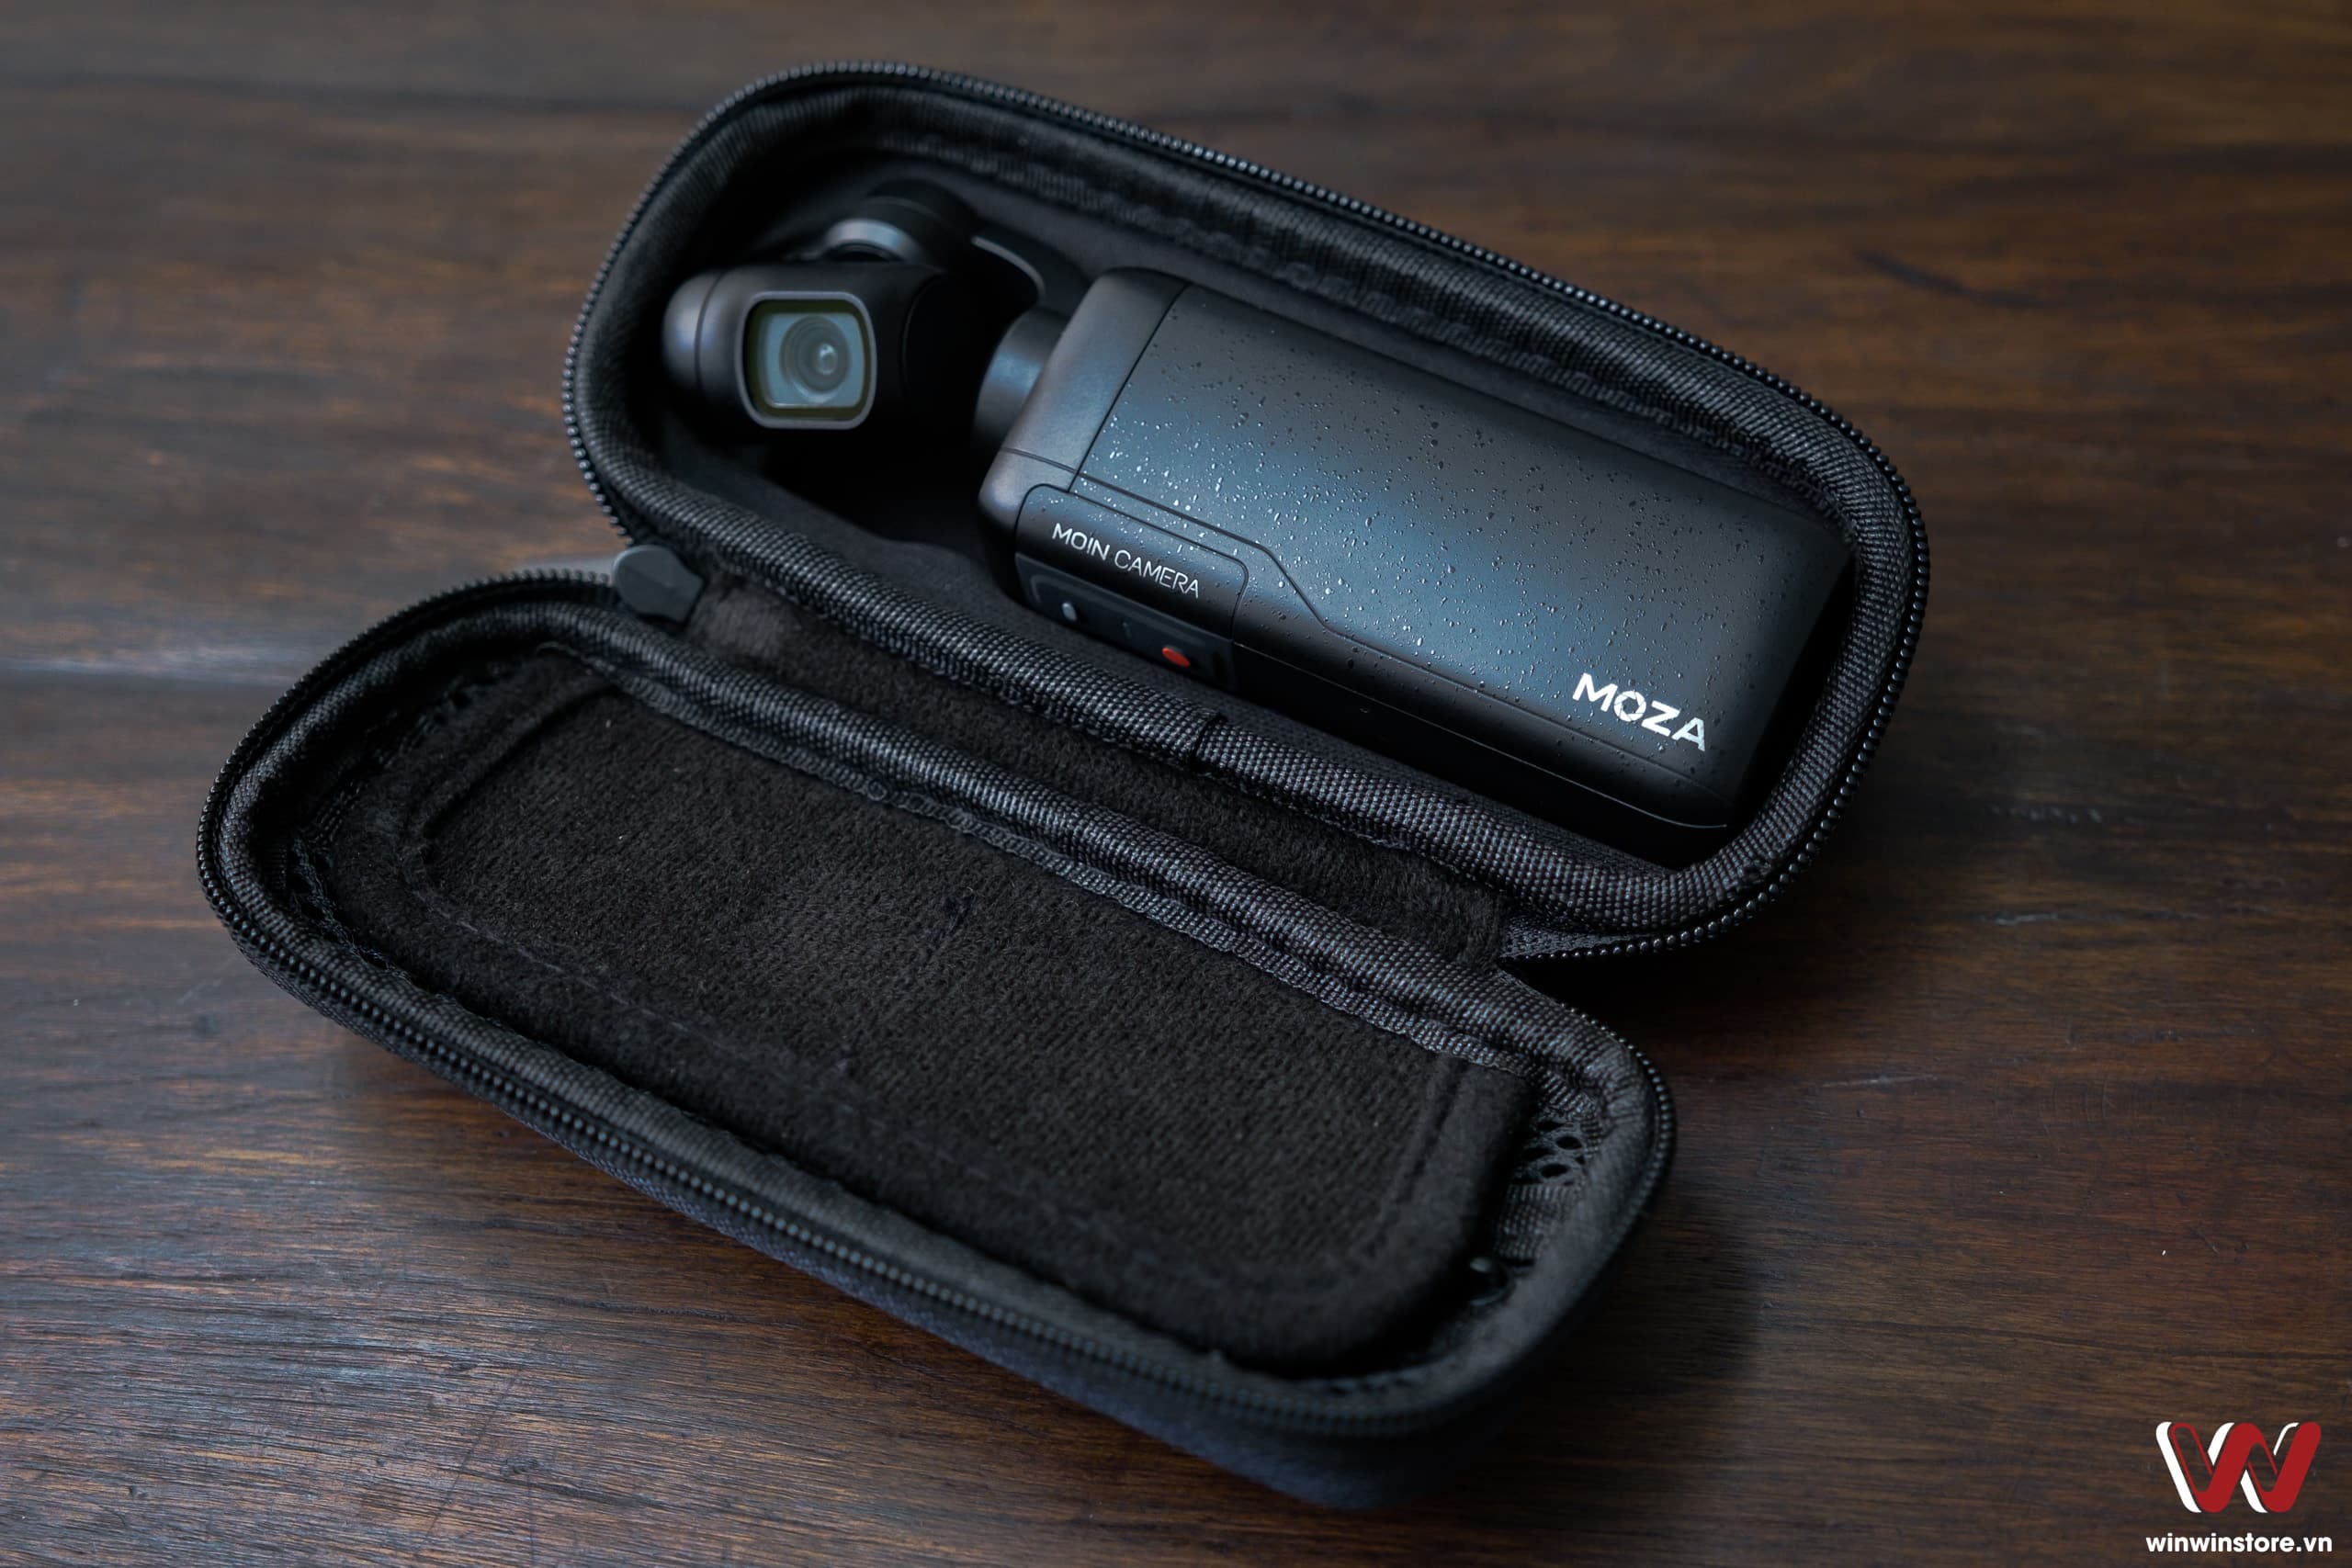 Trên tay camera hành trình cầm tay Moza Moin Pocket: Màn hình lớn sắc nét, quay 4K/60fps